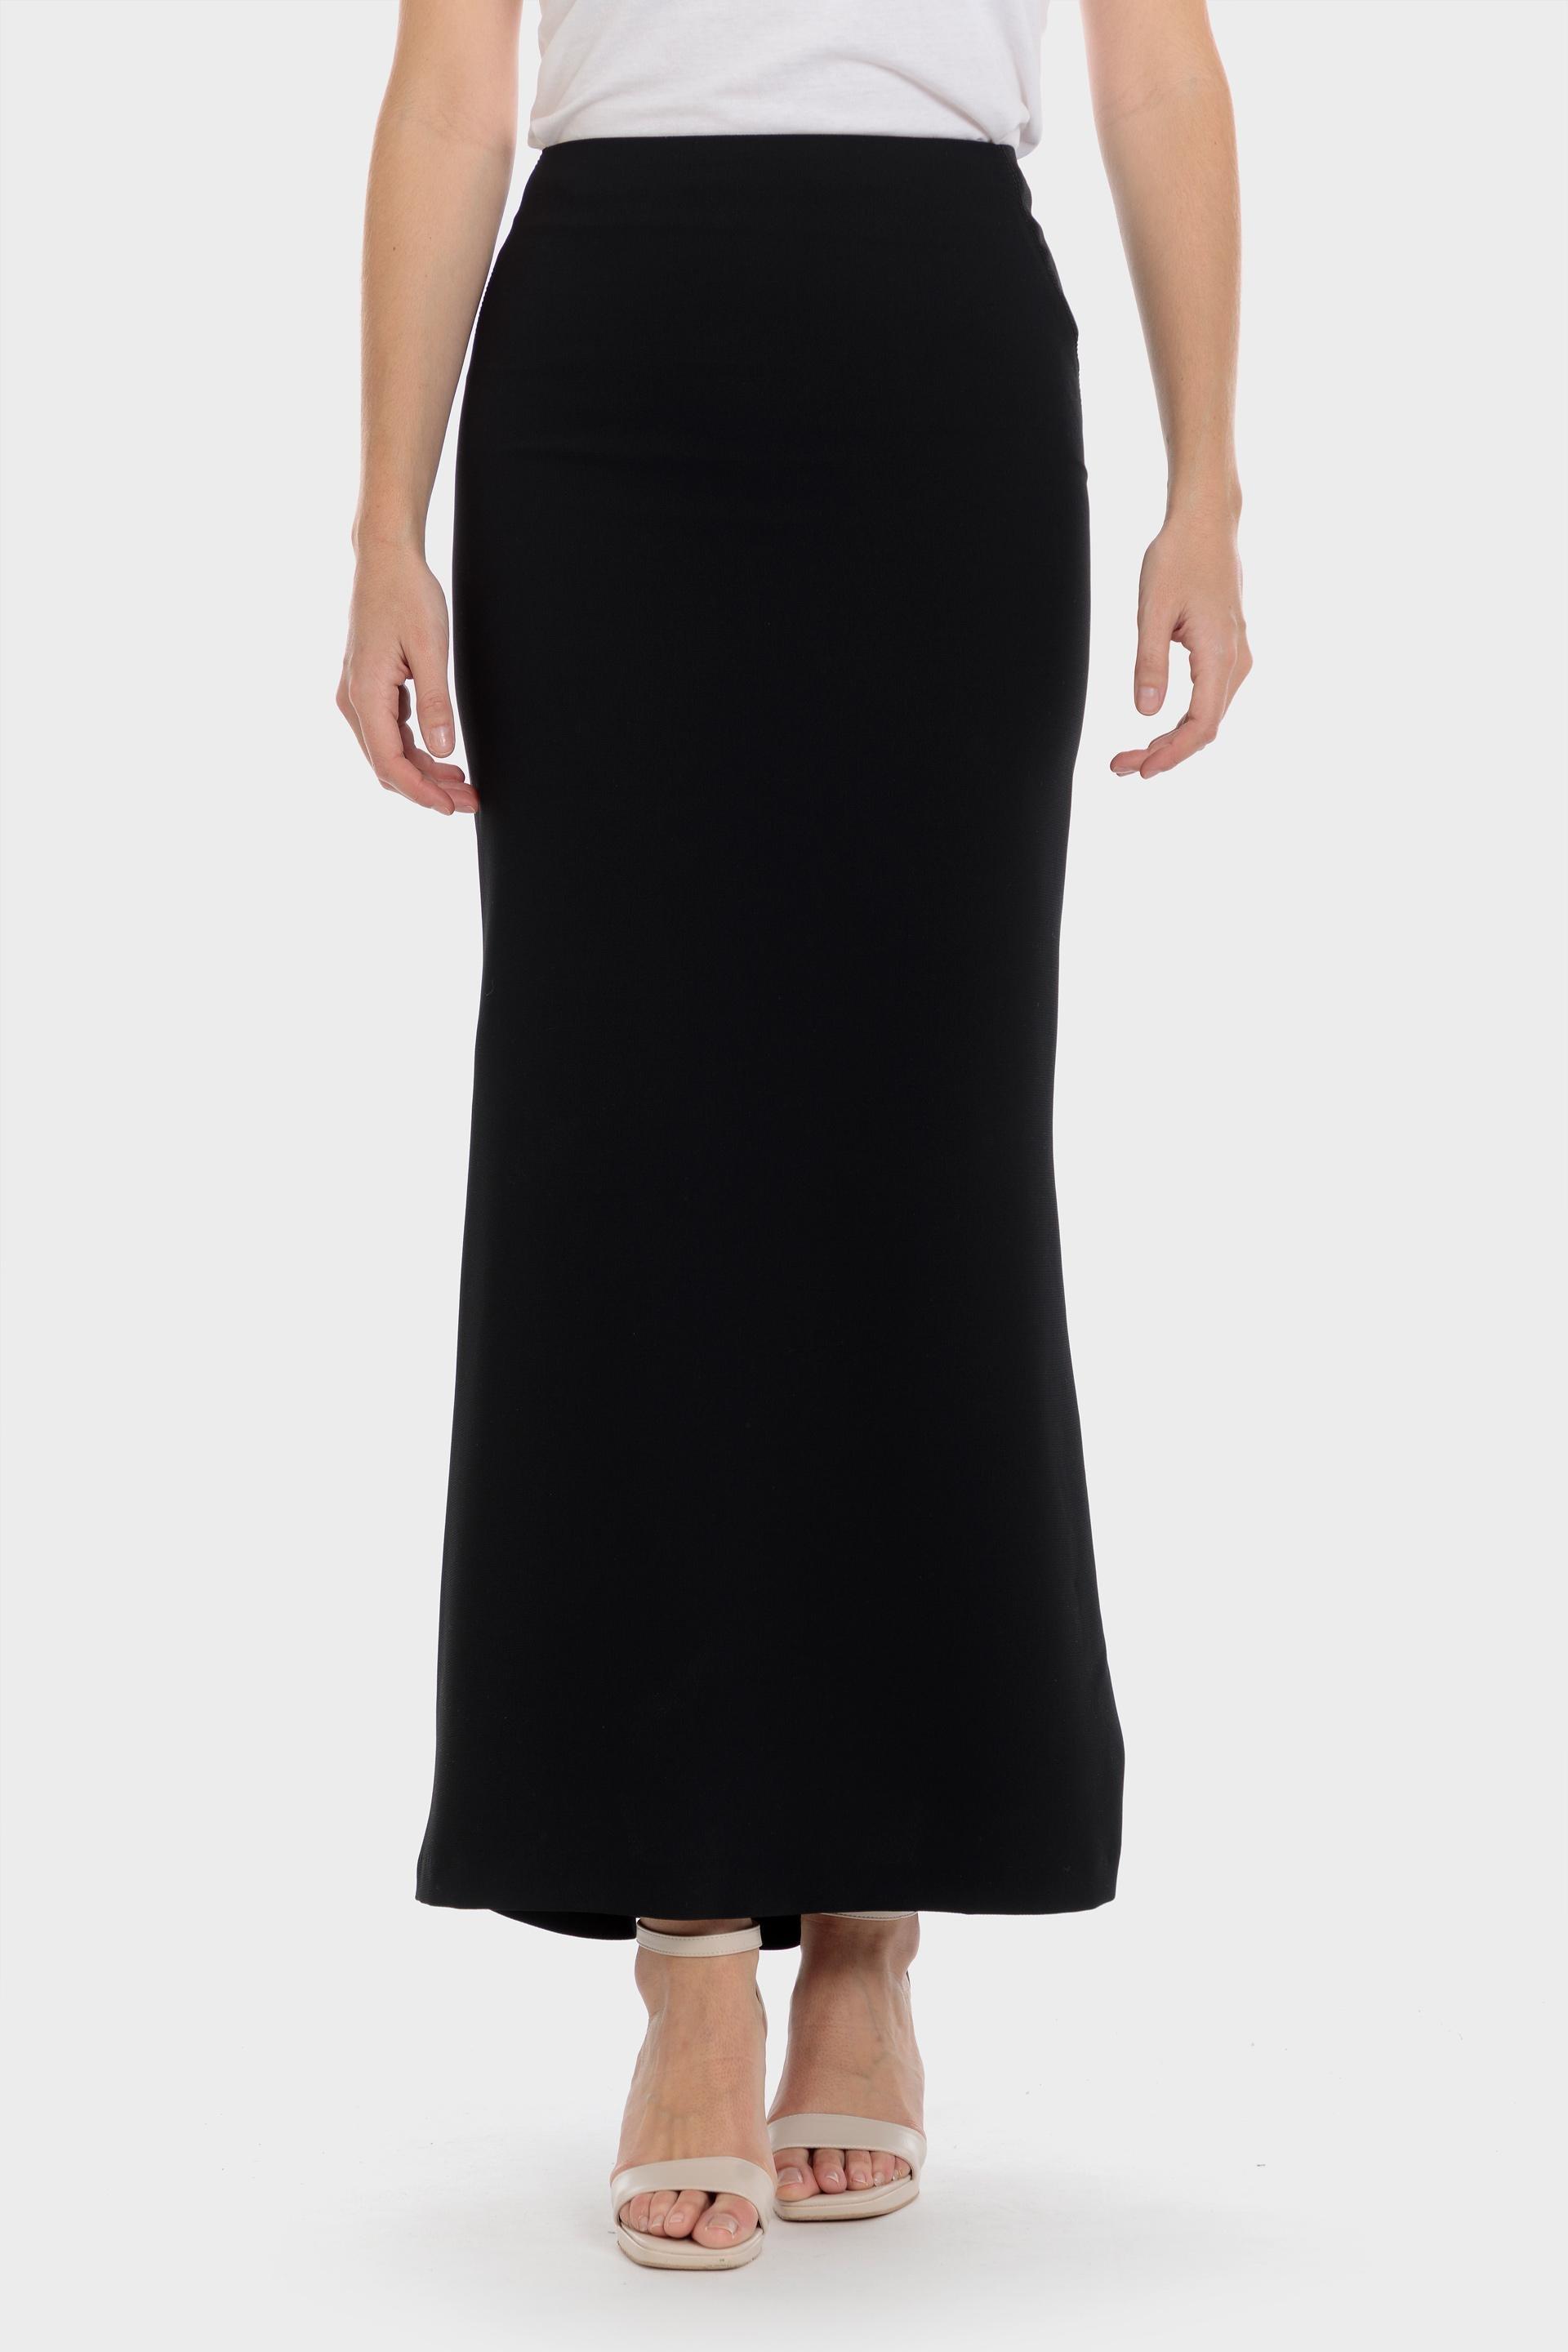 Punt Roma - Long crepe skirt